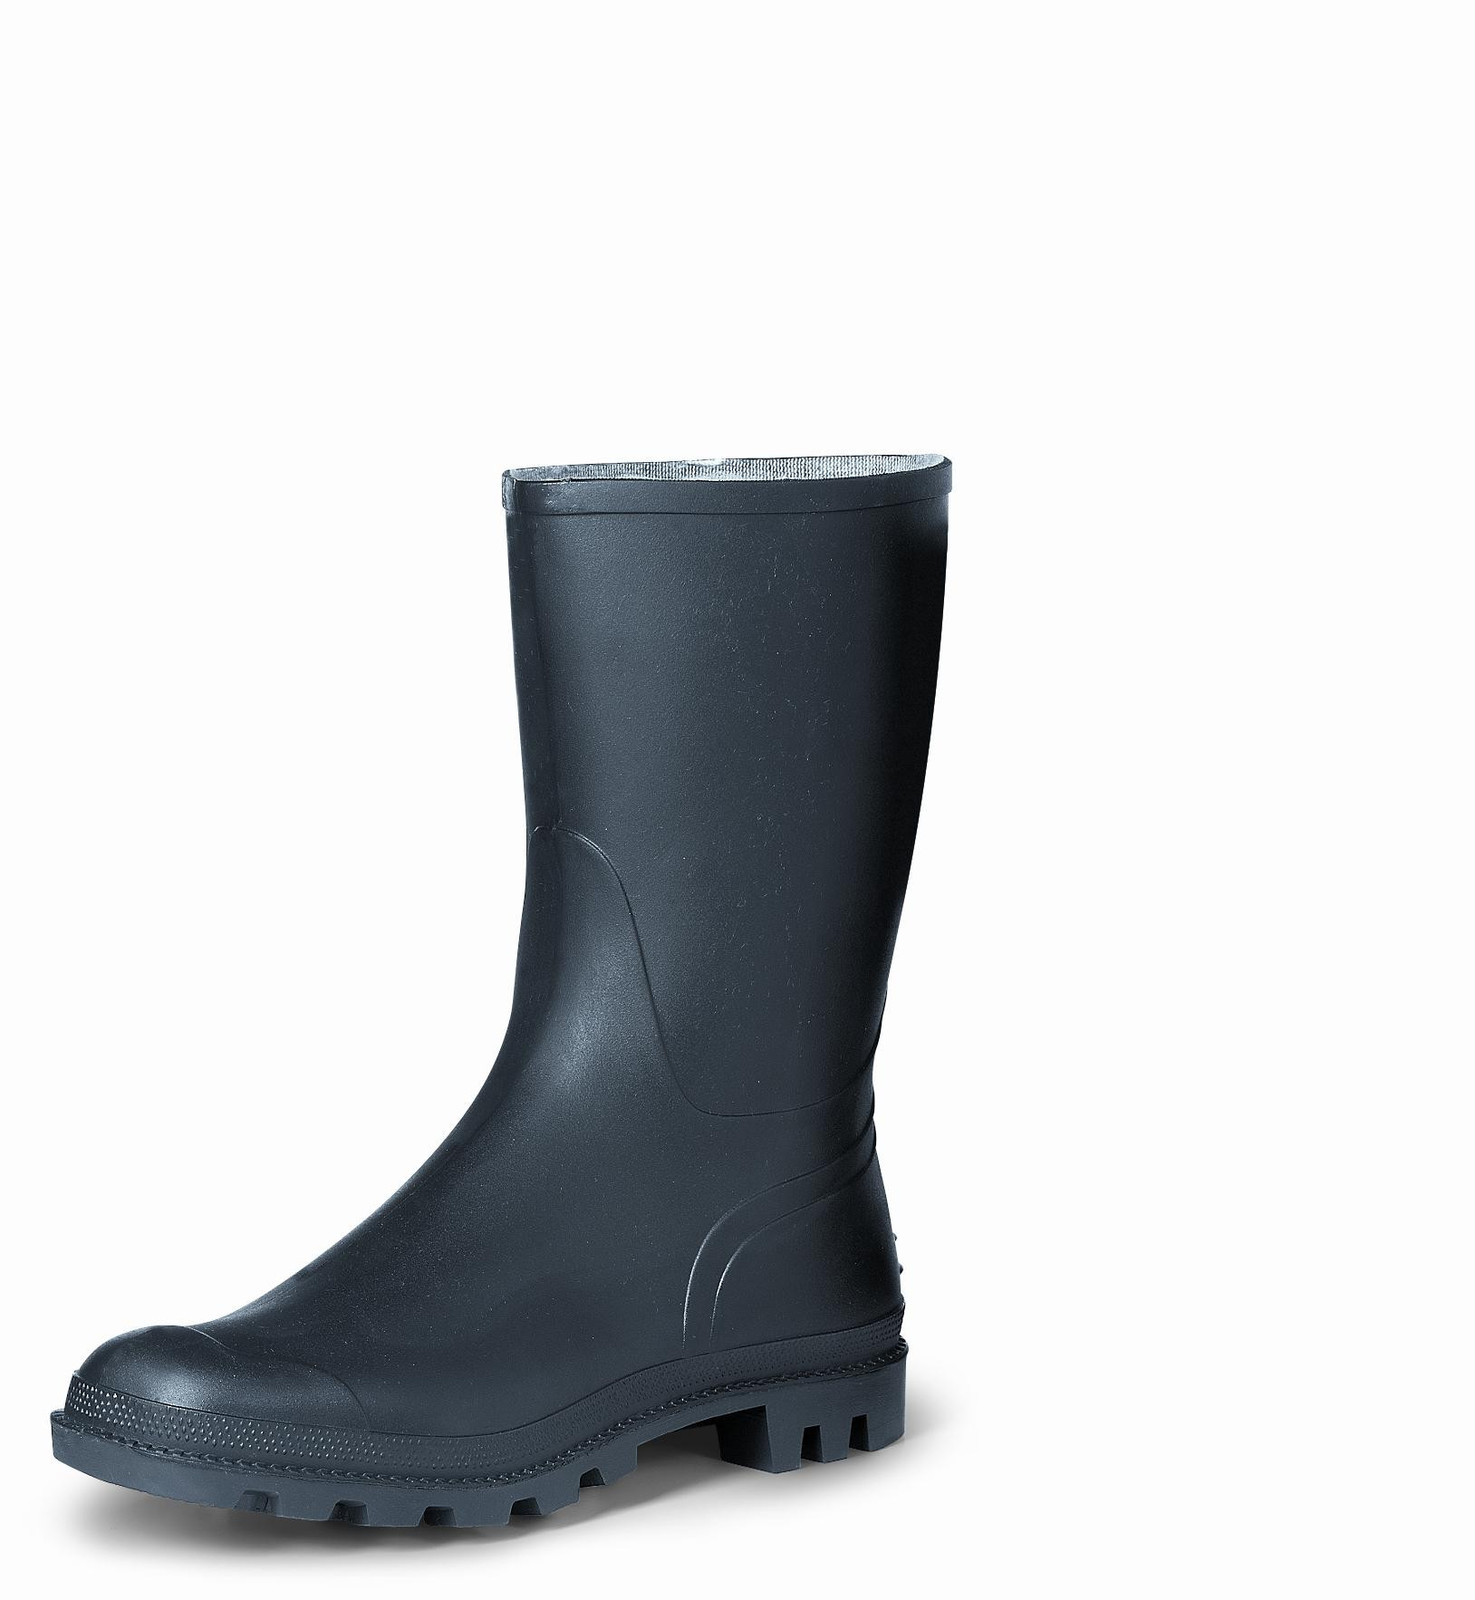 Gumáky Boots Troncheto PVC nízke - veľkosť: 45, farba: čierna